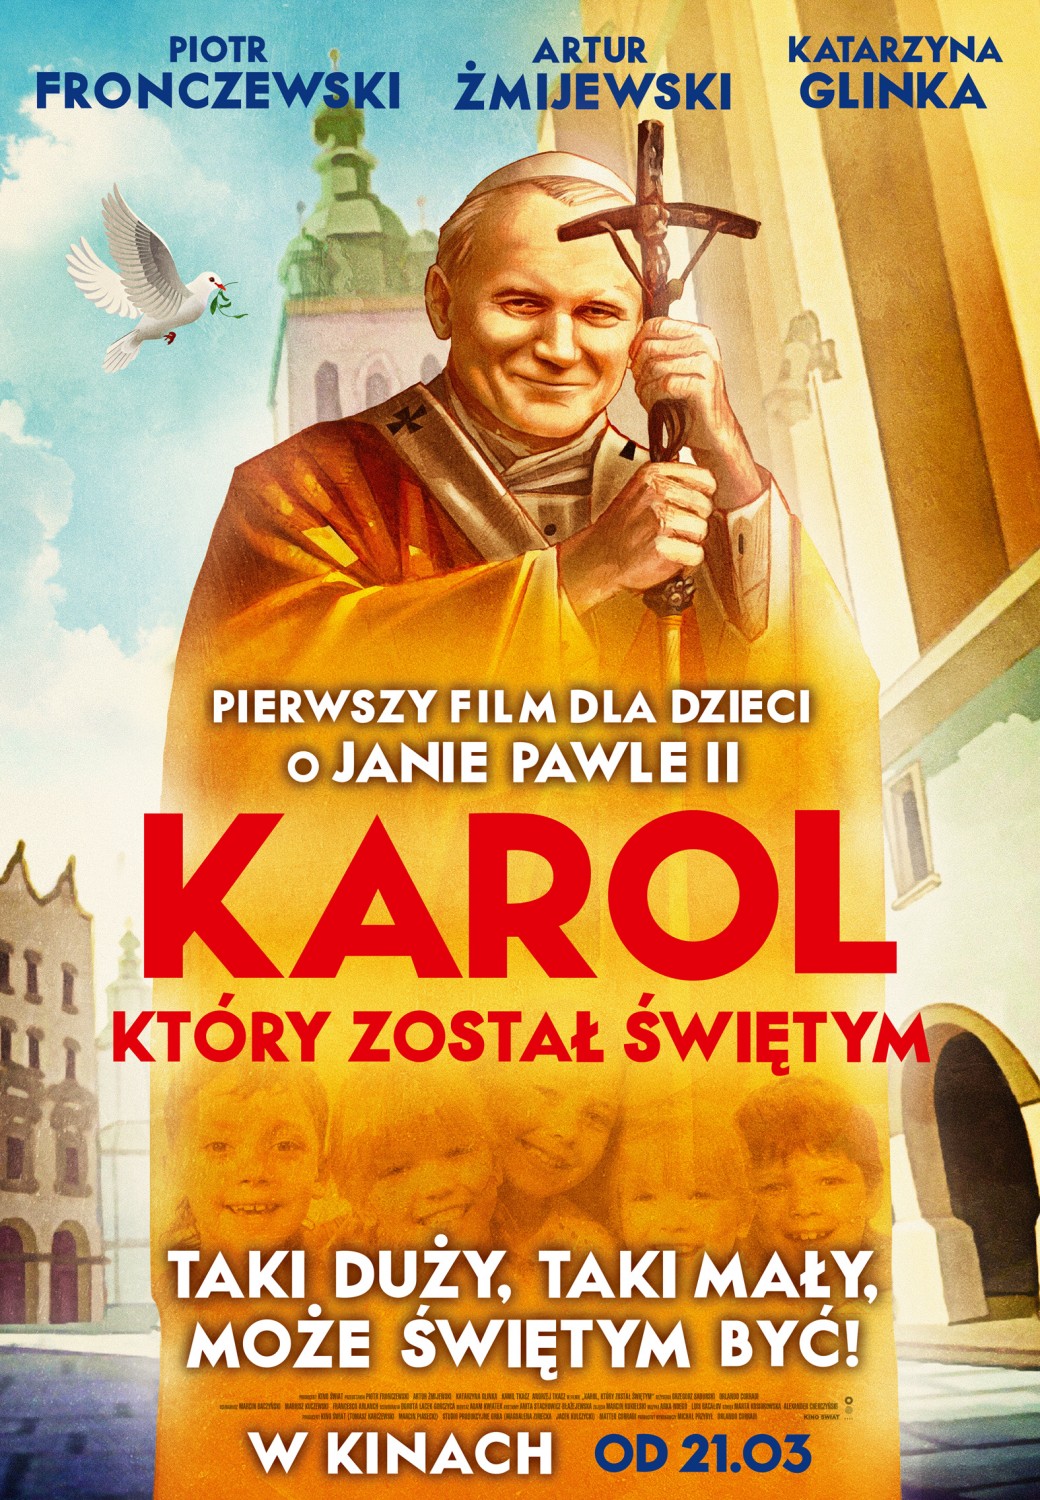 Extra Large Movie Poster Image for Karol, który został świętym 